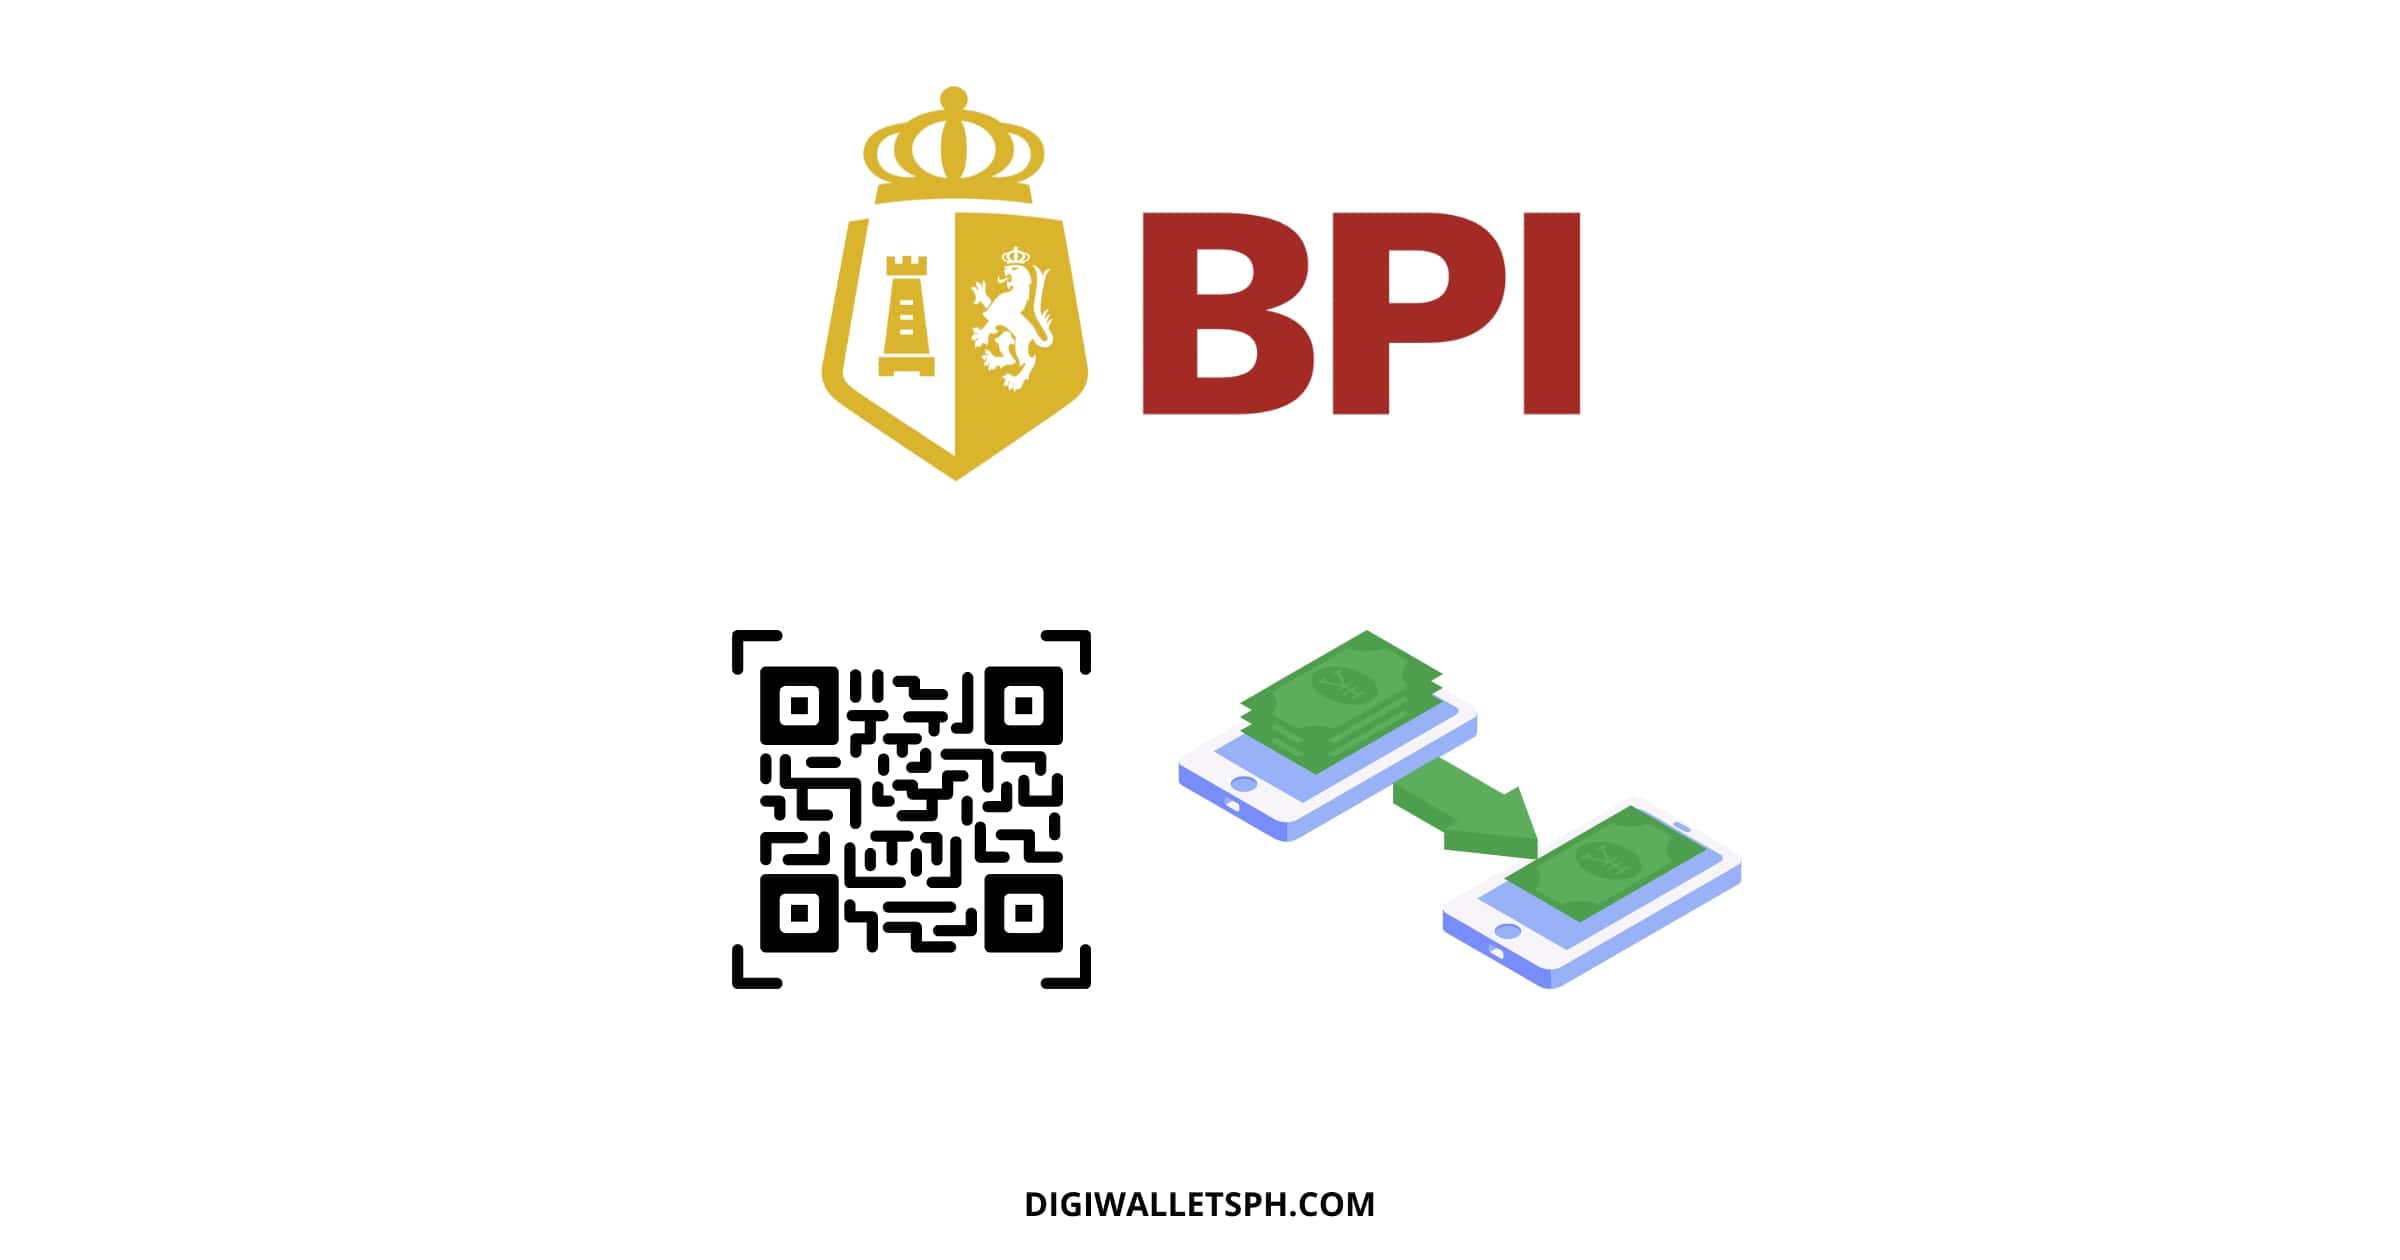 How to transfer money from BPI to BPI